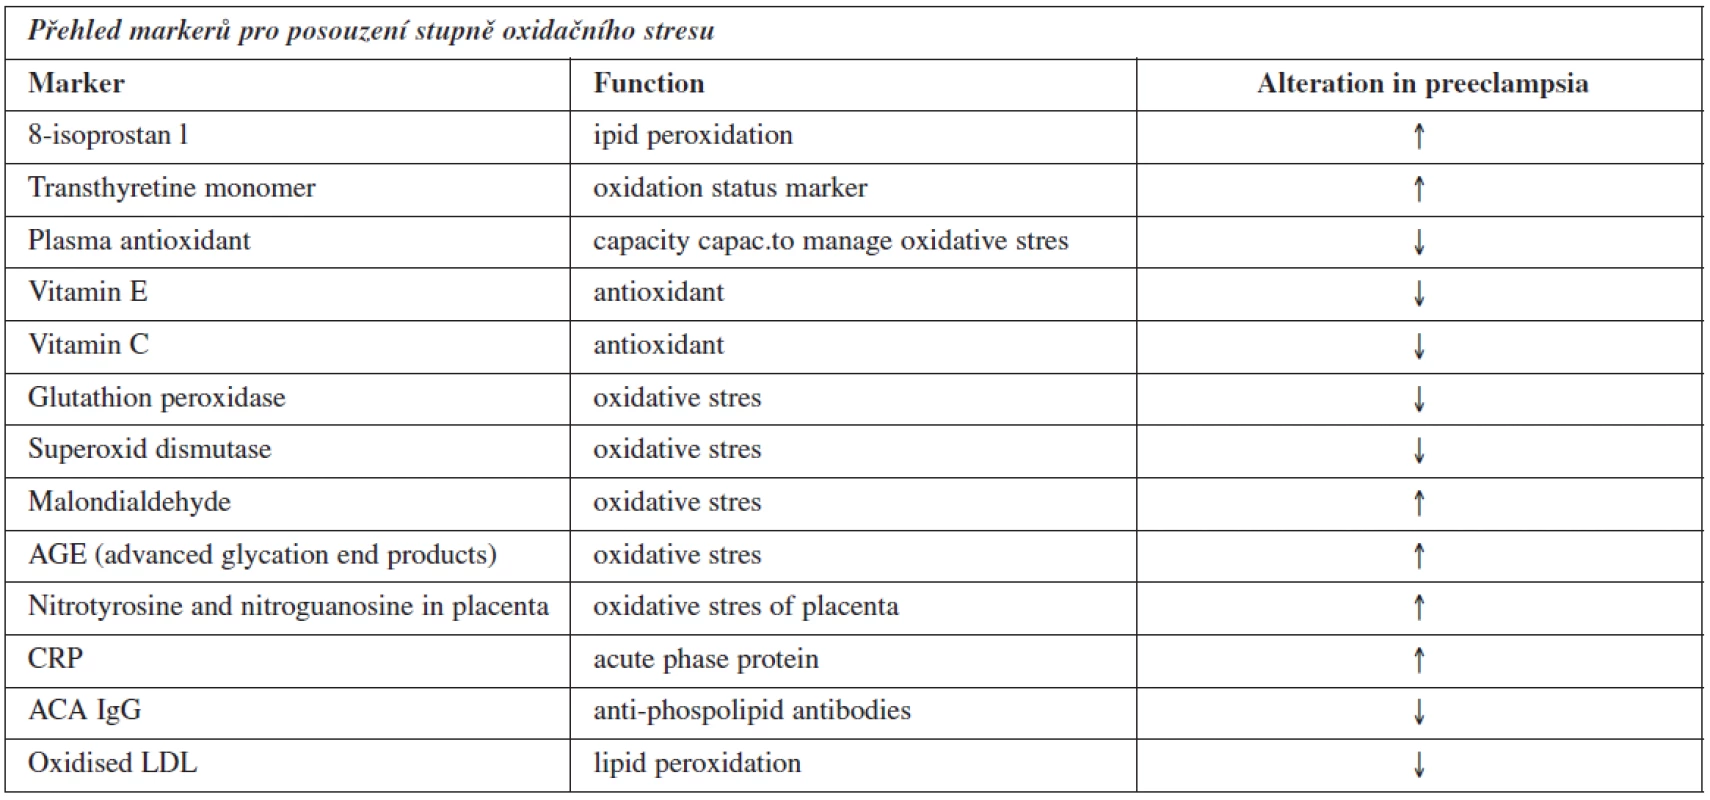 Přehled potenciálních markerů pro posouzení oxidačního stresu. Zdroj: databáze PubMed